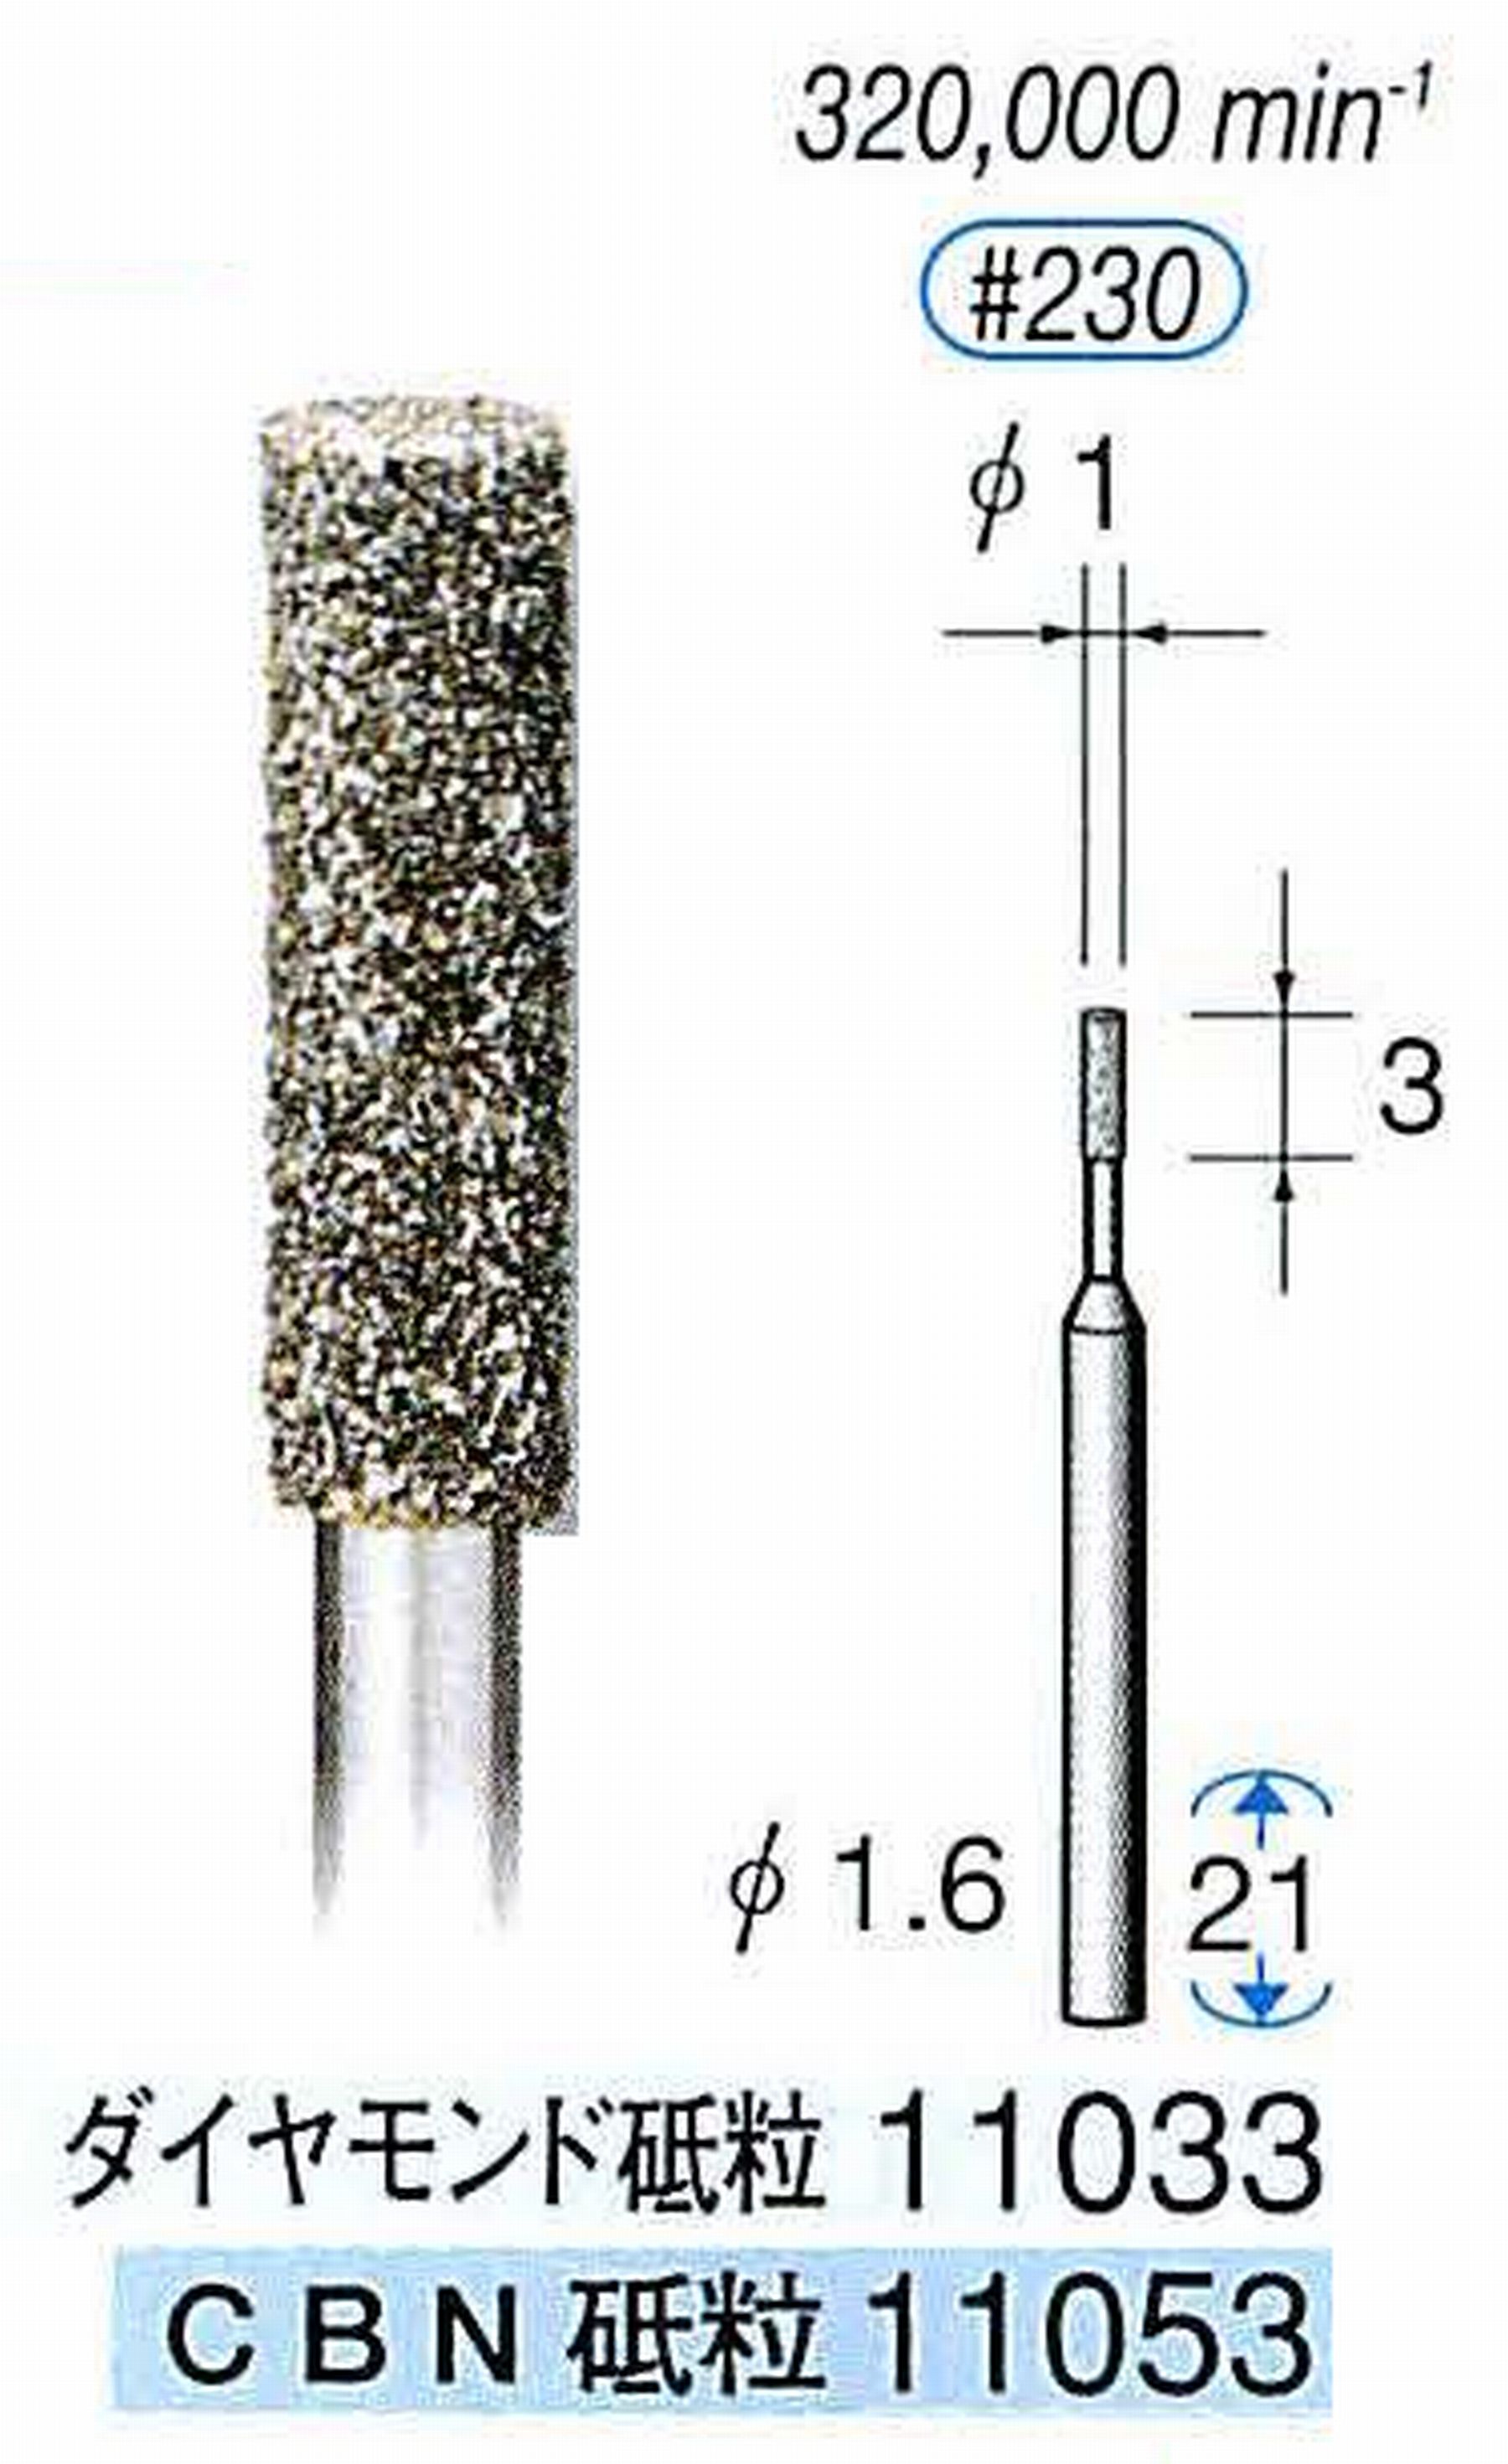 ナカニシ/NAKANISHI 電着CBNバー(ミニチュアタイプ)CBN砥粒 軸径(シャンク)φ1.6mm 11053